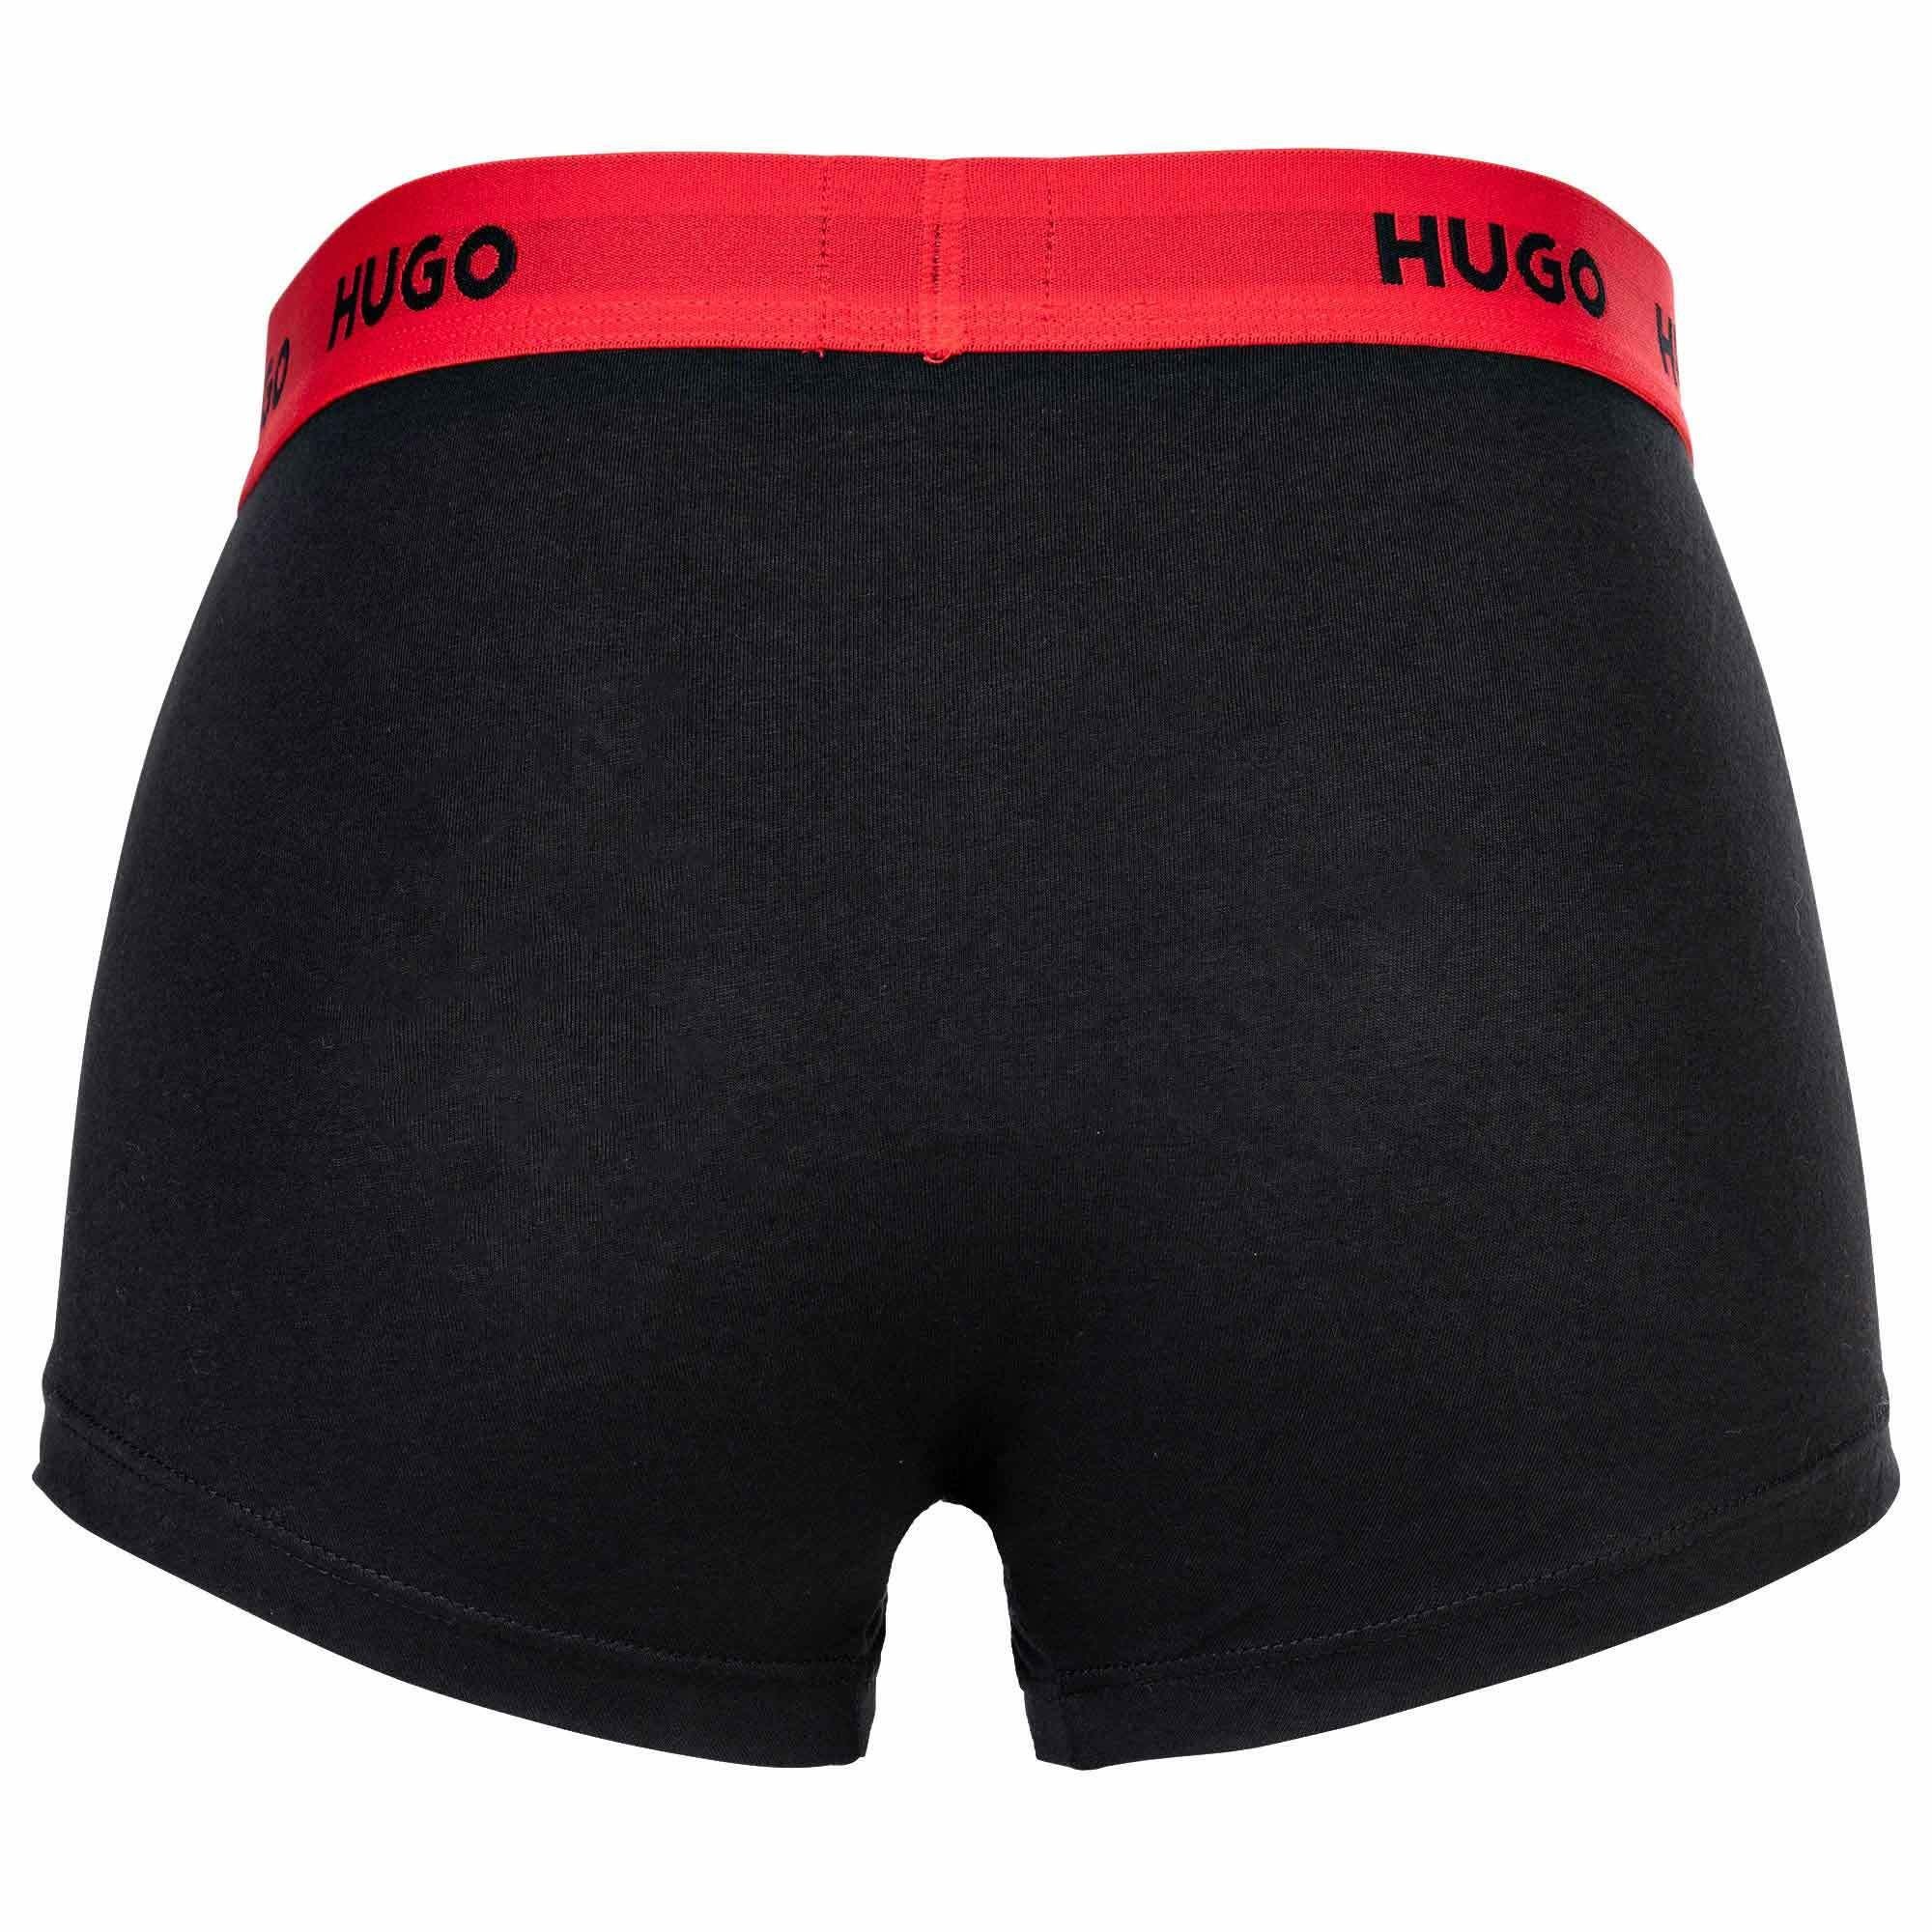 Schwarz/Grau/Blau Pack Triplet 3er Shorts, Herren Boxer - HUGO Trunks Boxer